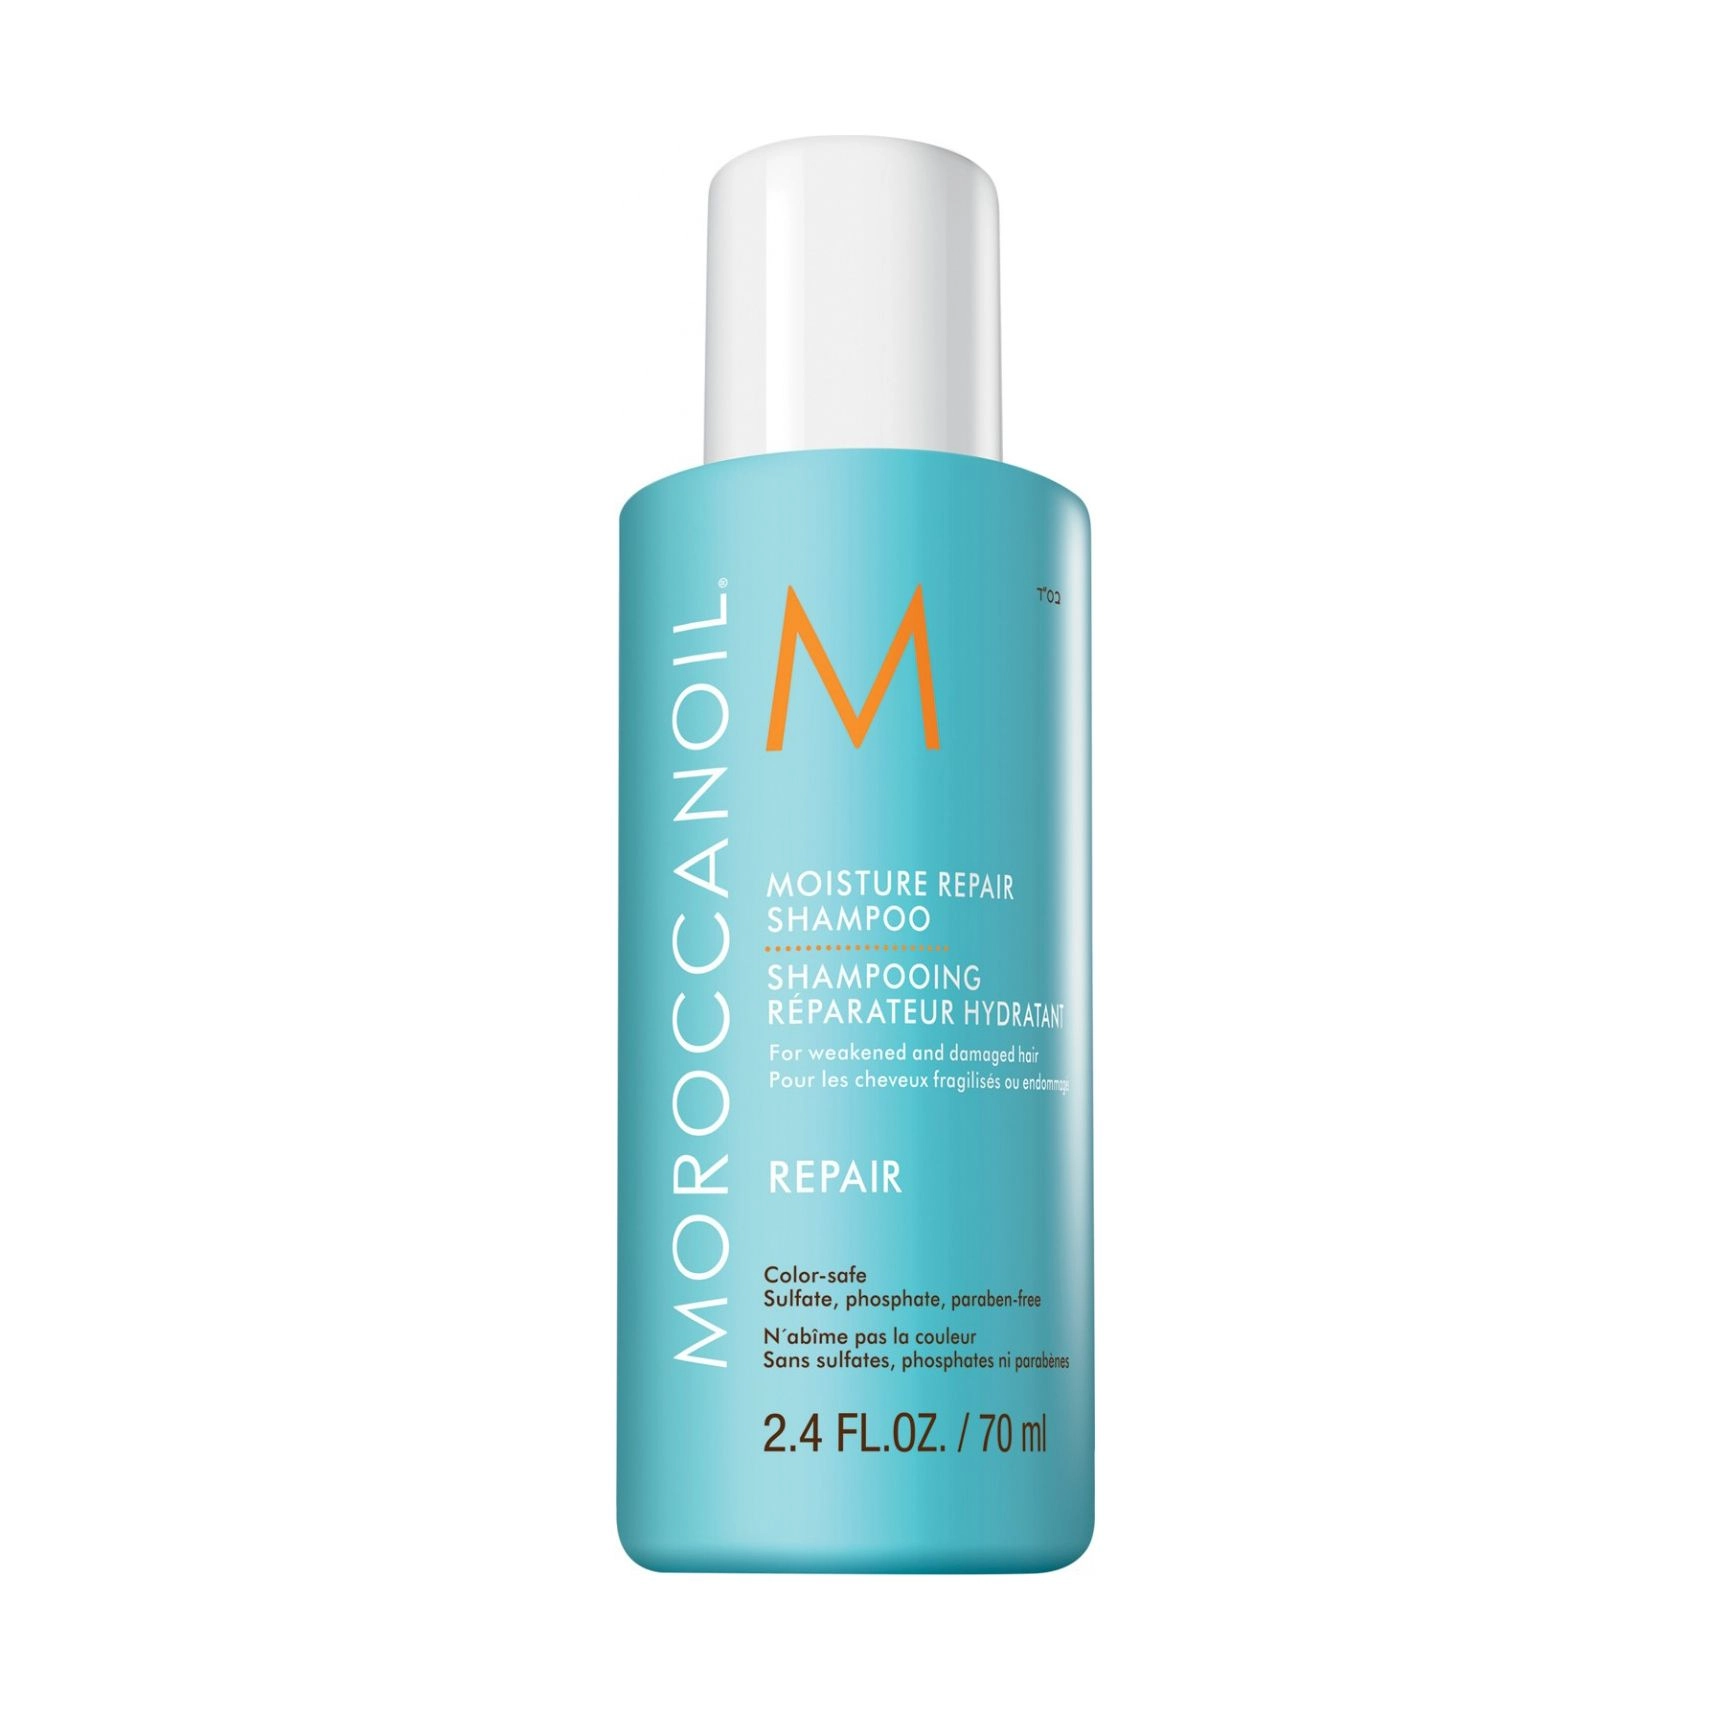 Зволожуючий шампунь для відновлення волосся - Moroccanoil Moisture Repair Shampoo, 70 мл - фото N1